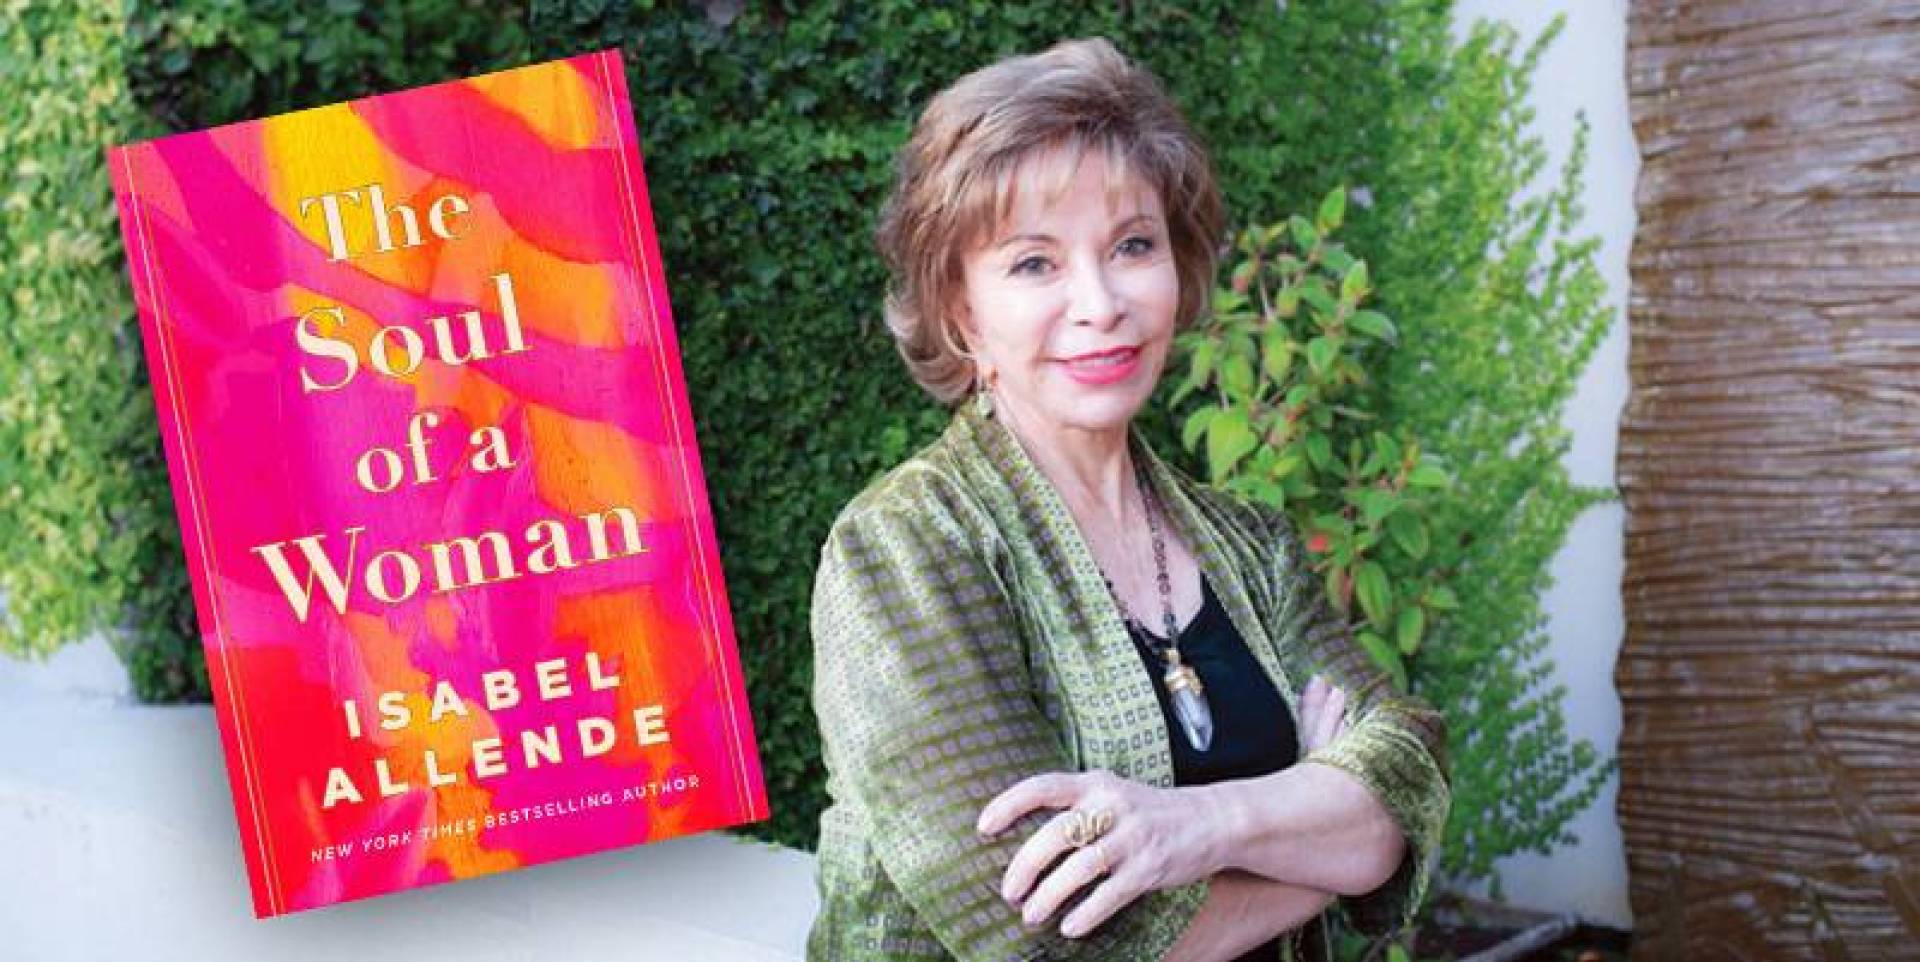 كتاب «روح امرأة»، الكاتبة التشيلية إيزابيل الليندي